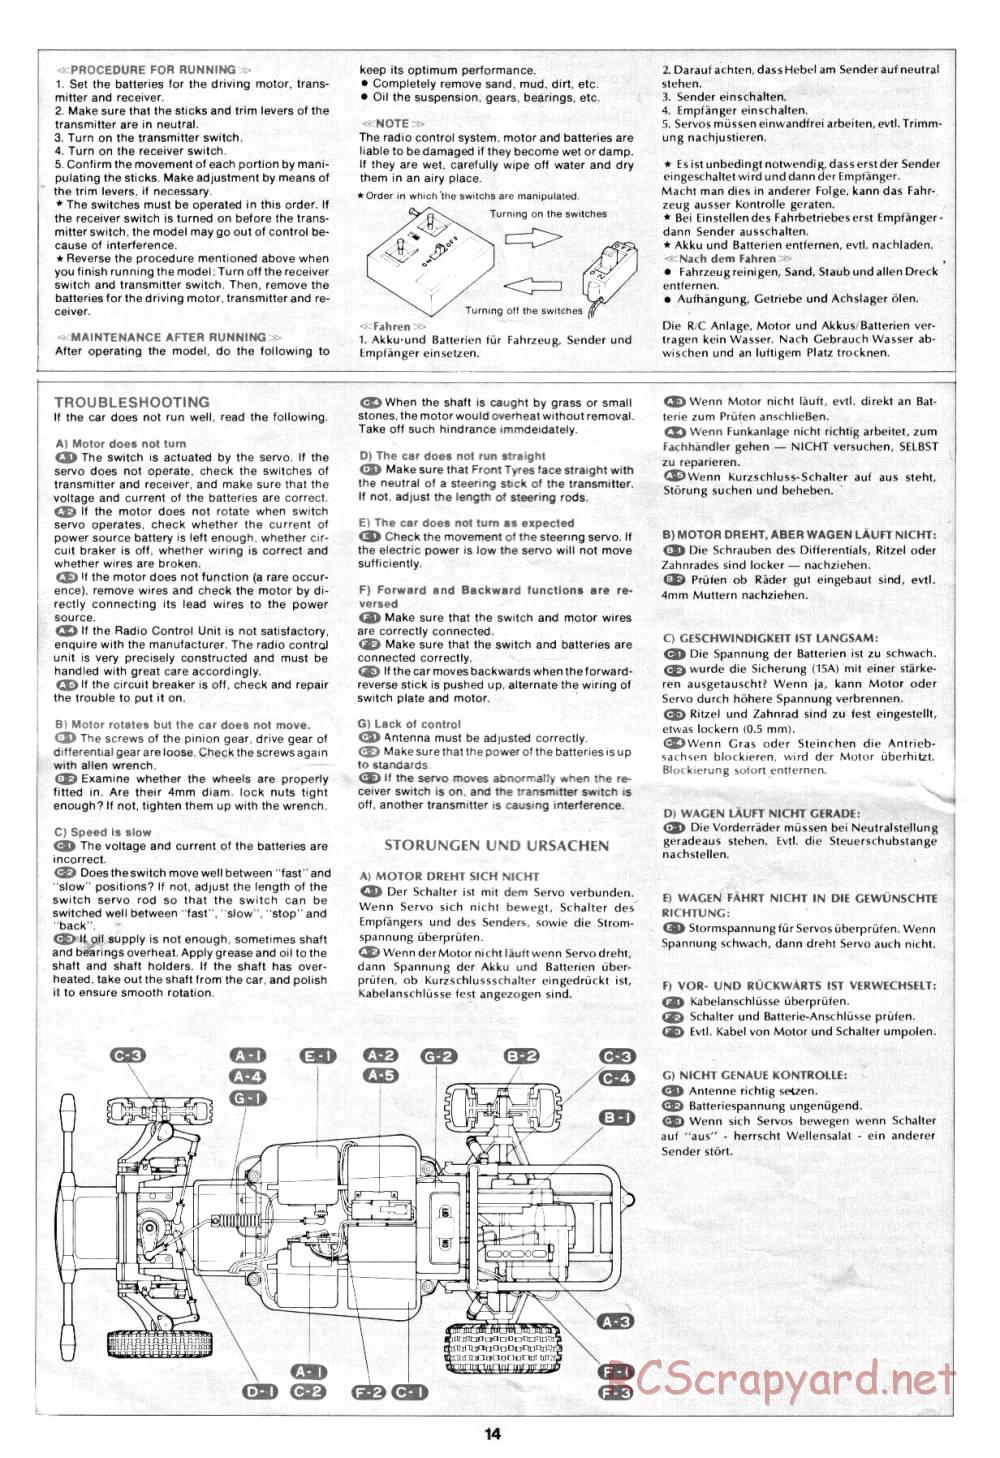 Tamiya - Rough Rider - 58015 - Manual - Page 14